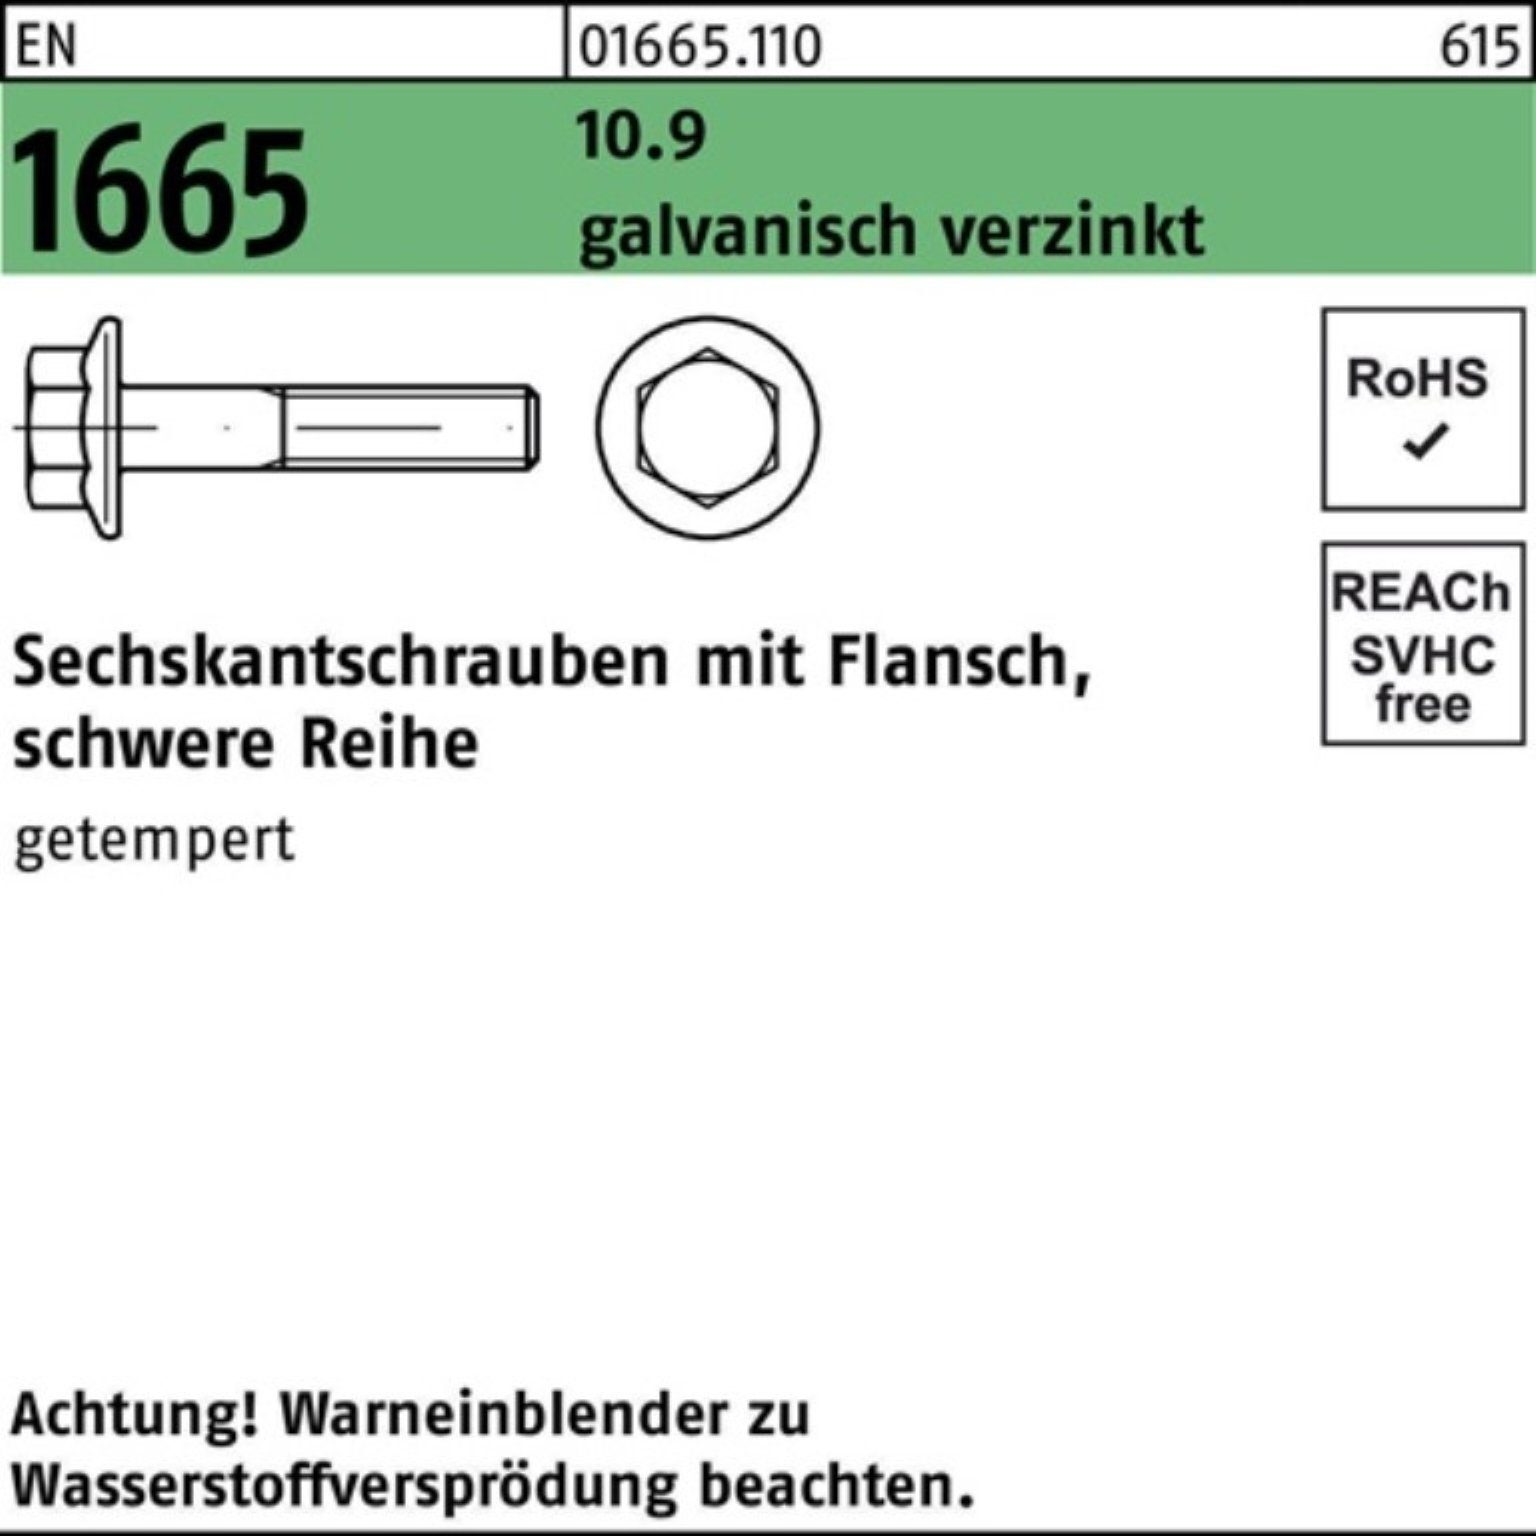 Reyher Sechskantschraube 100er Pack Sechskantschraube 1665 10.9 EN Flansch 25 galv.verz. 1 M12x